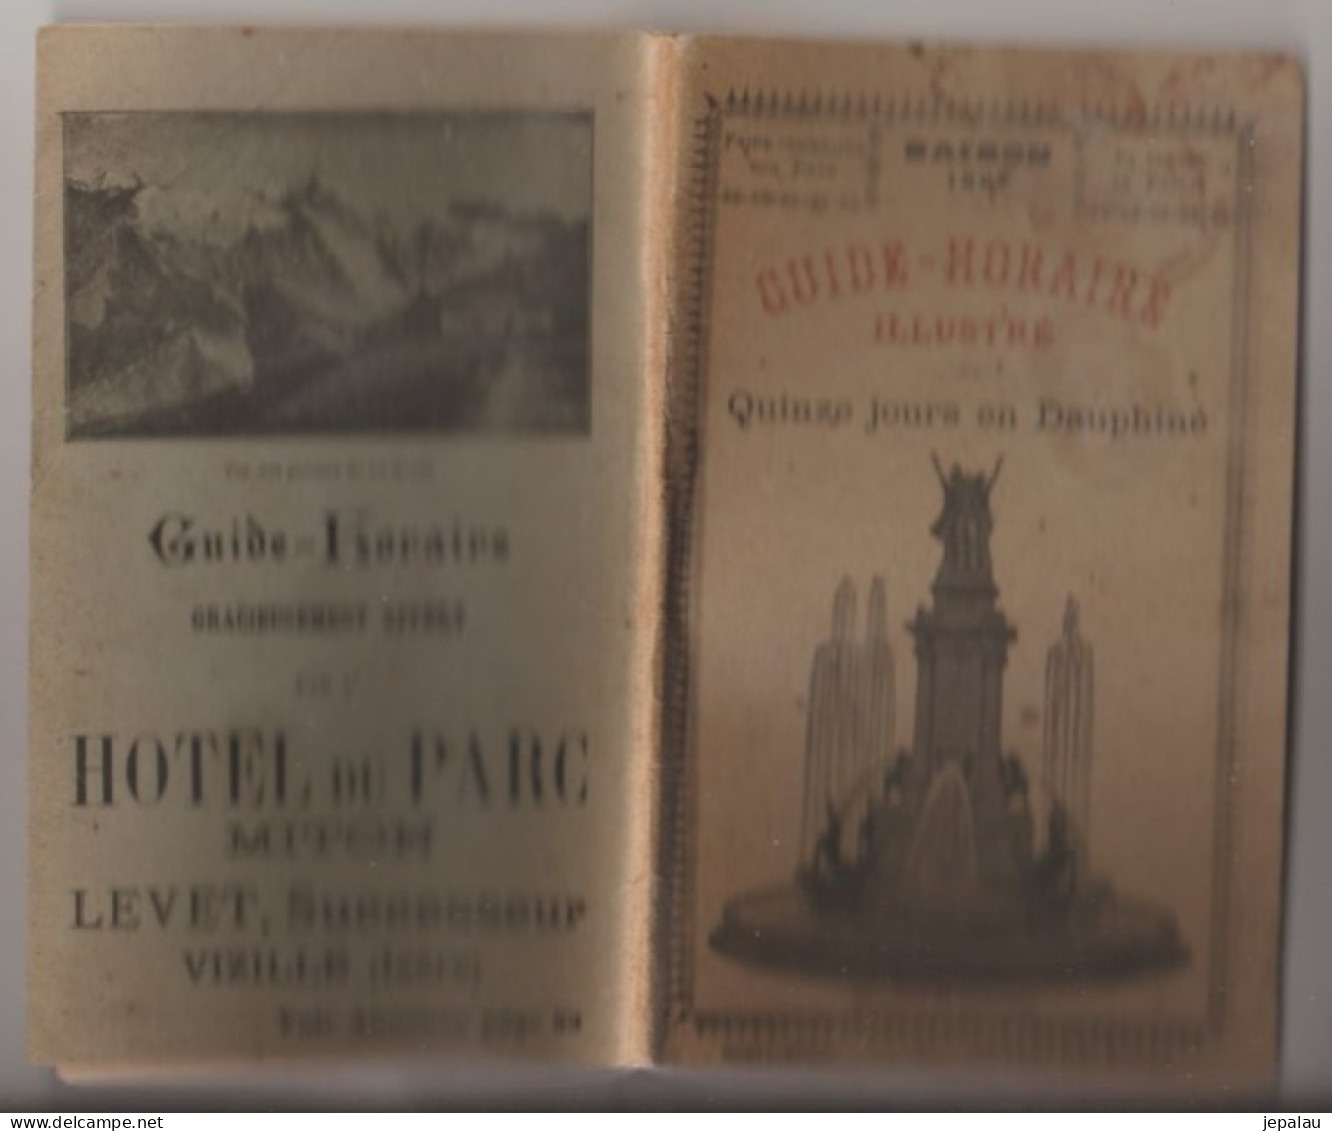 Guide Horaire Illustré / Quinze Jours En Dauphiné (1897) - Personnages